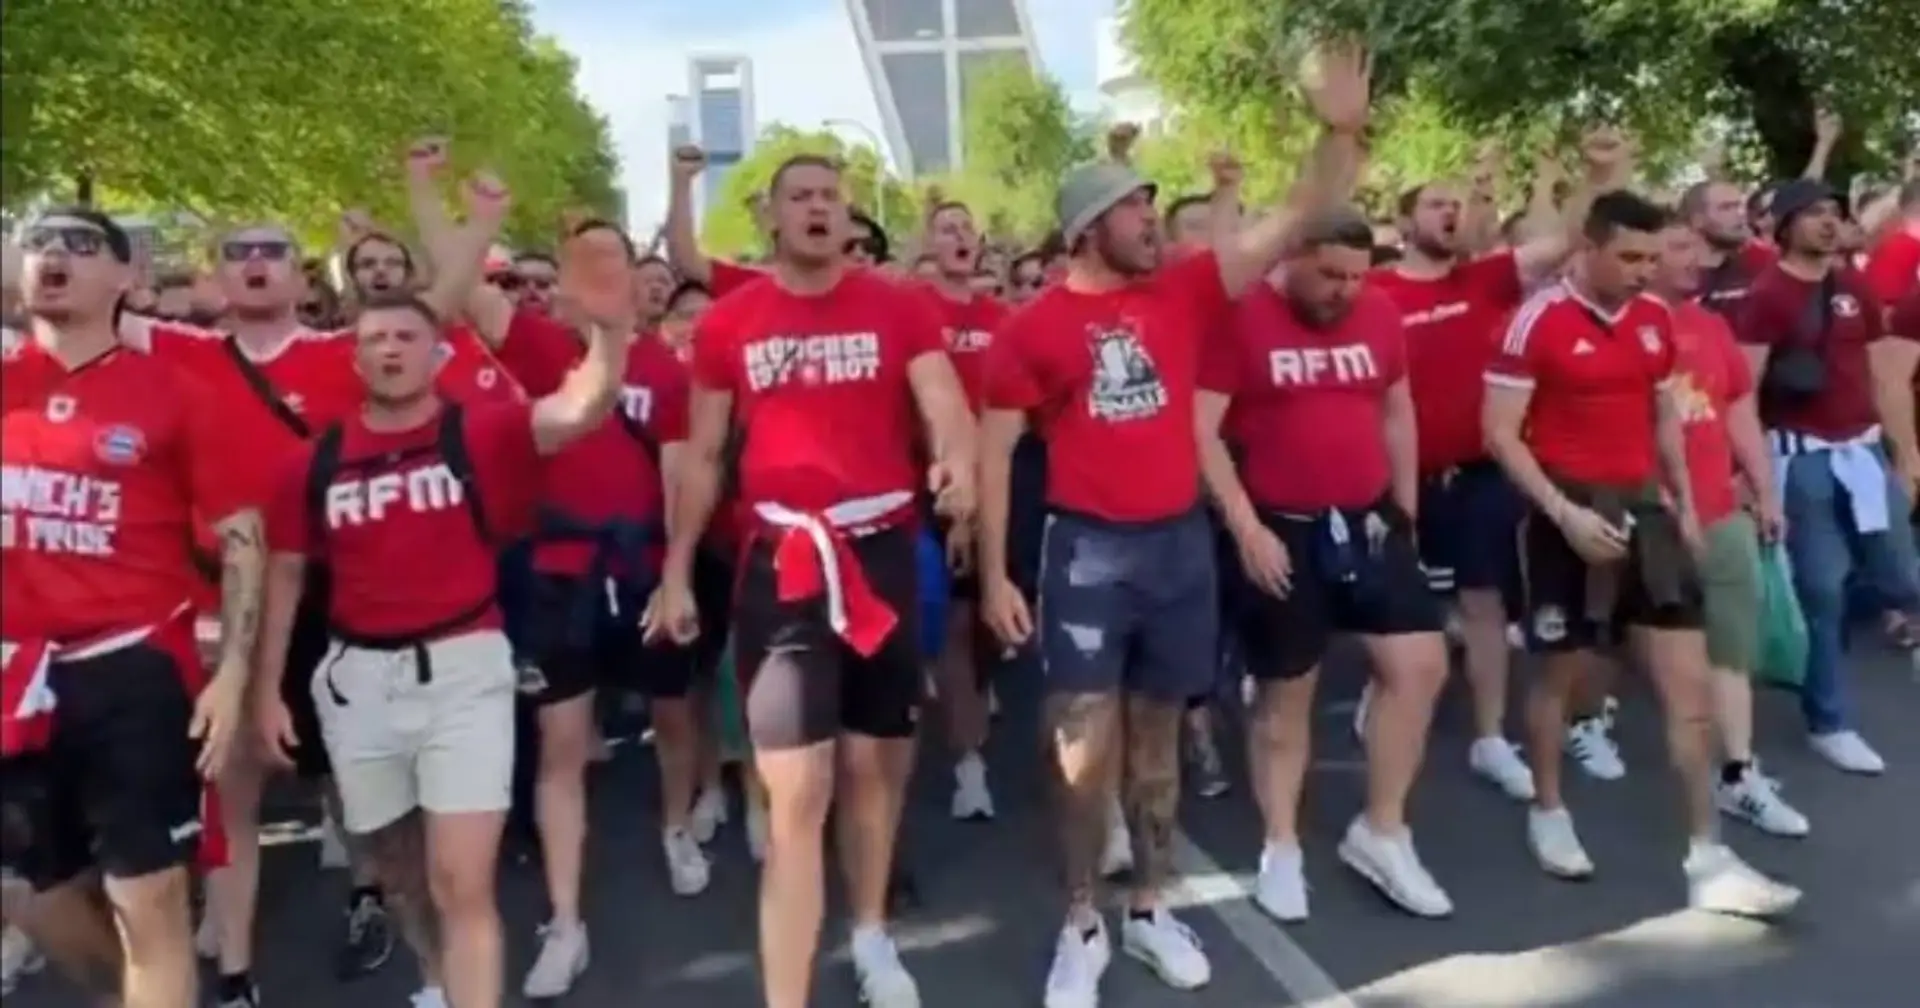 "Der Arjen hat's gemacht!": Bayern-Fans singen berühmtes Wembley-Lied auf dem Weg zum Bernabeu